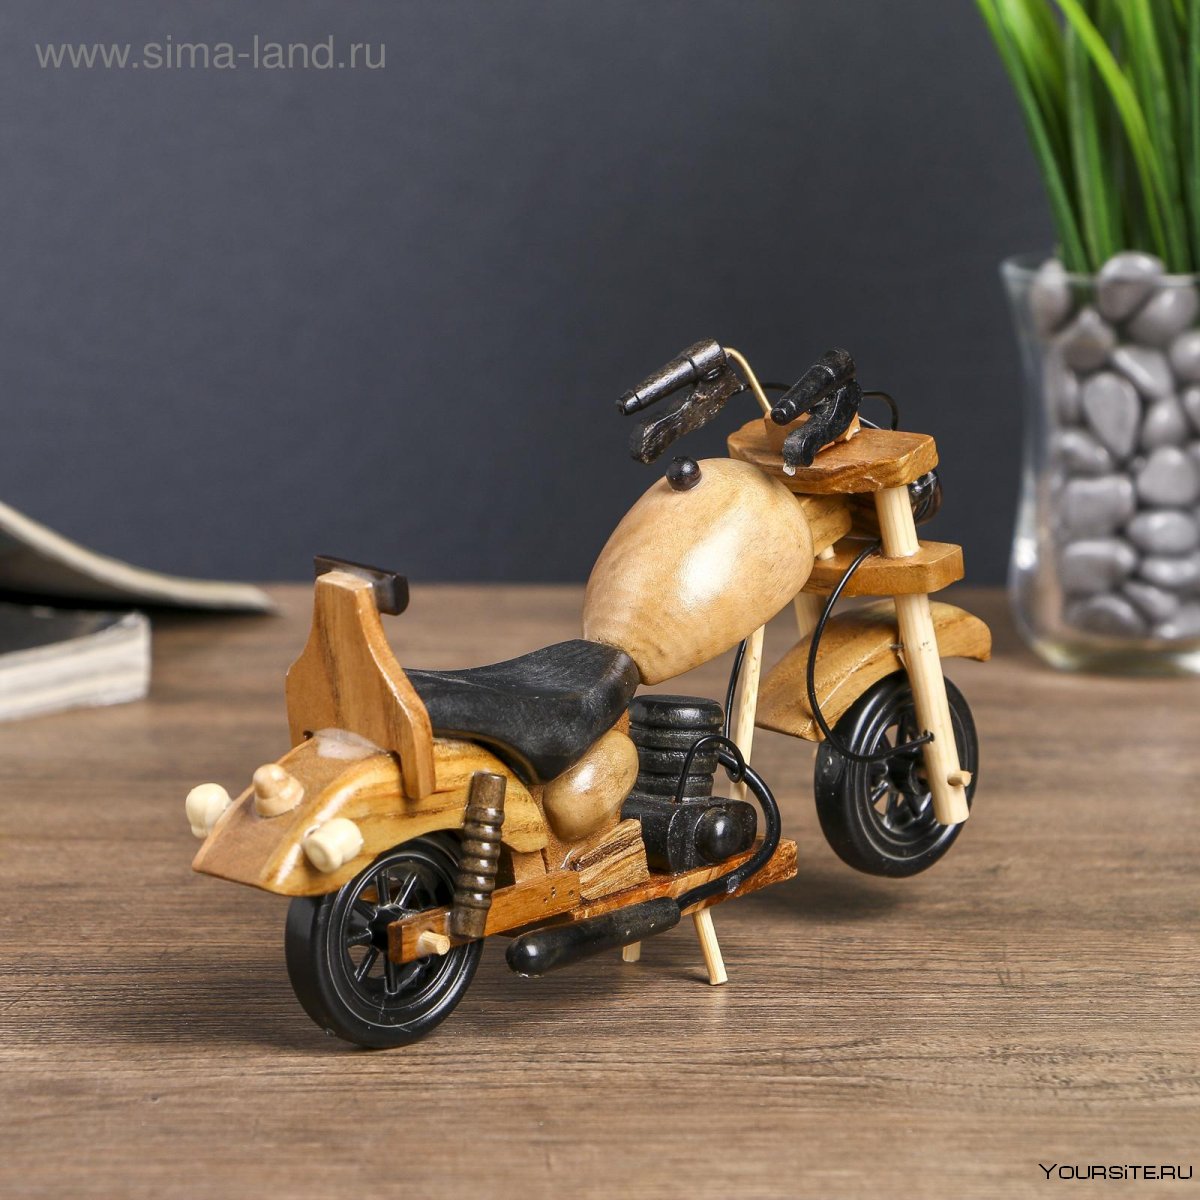 Модель мотоцикла из дерева